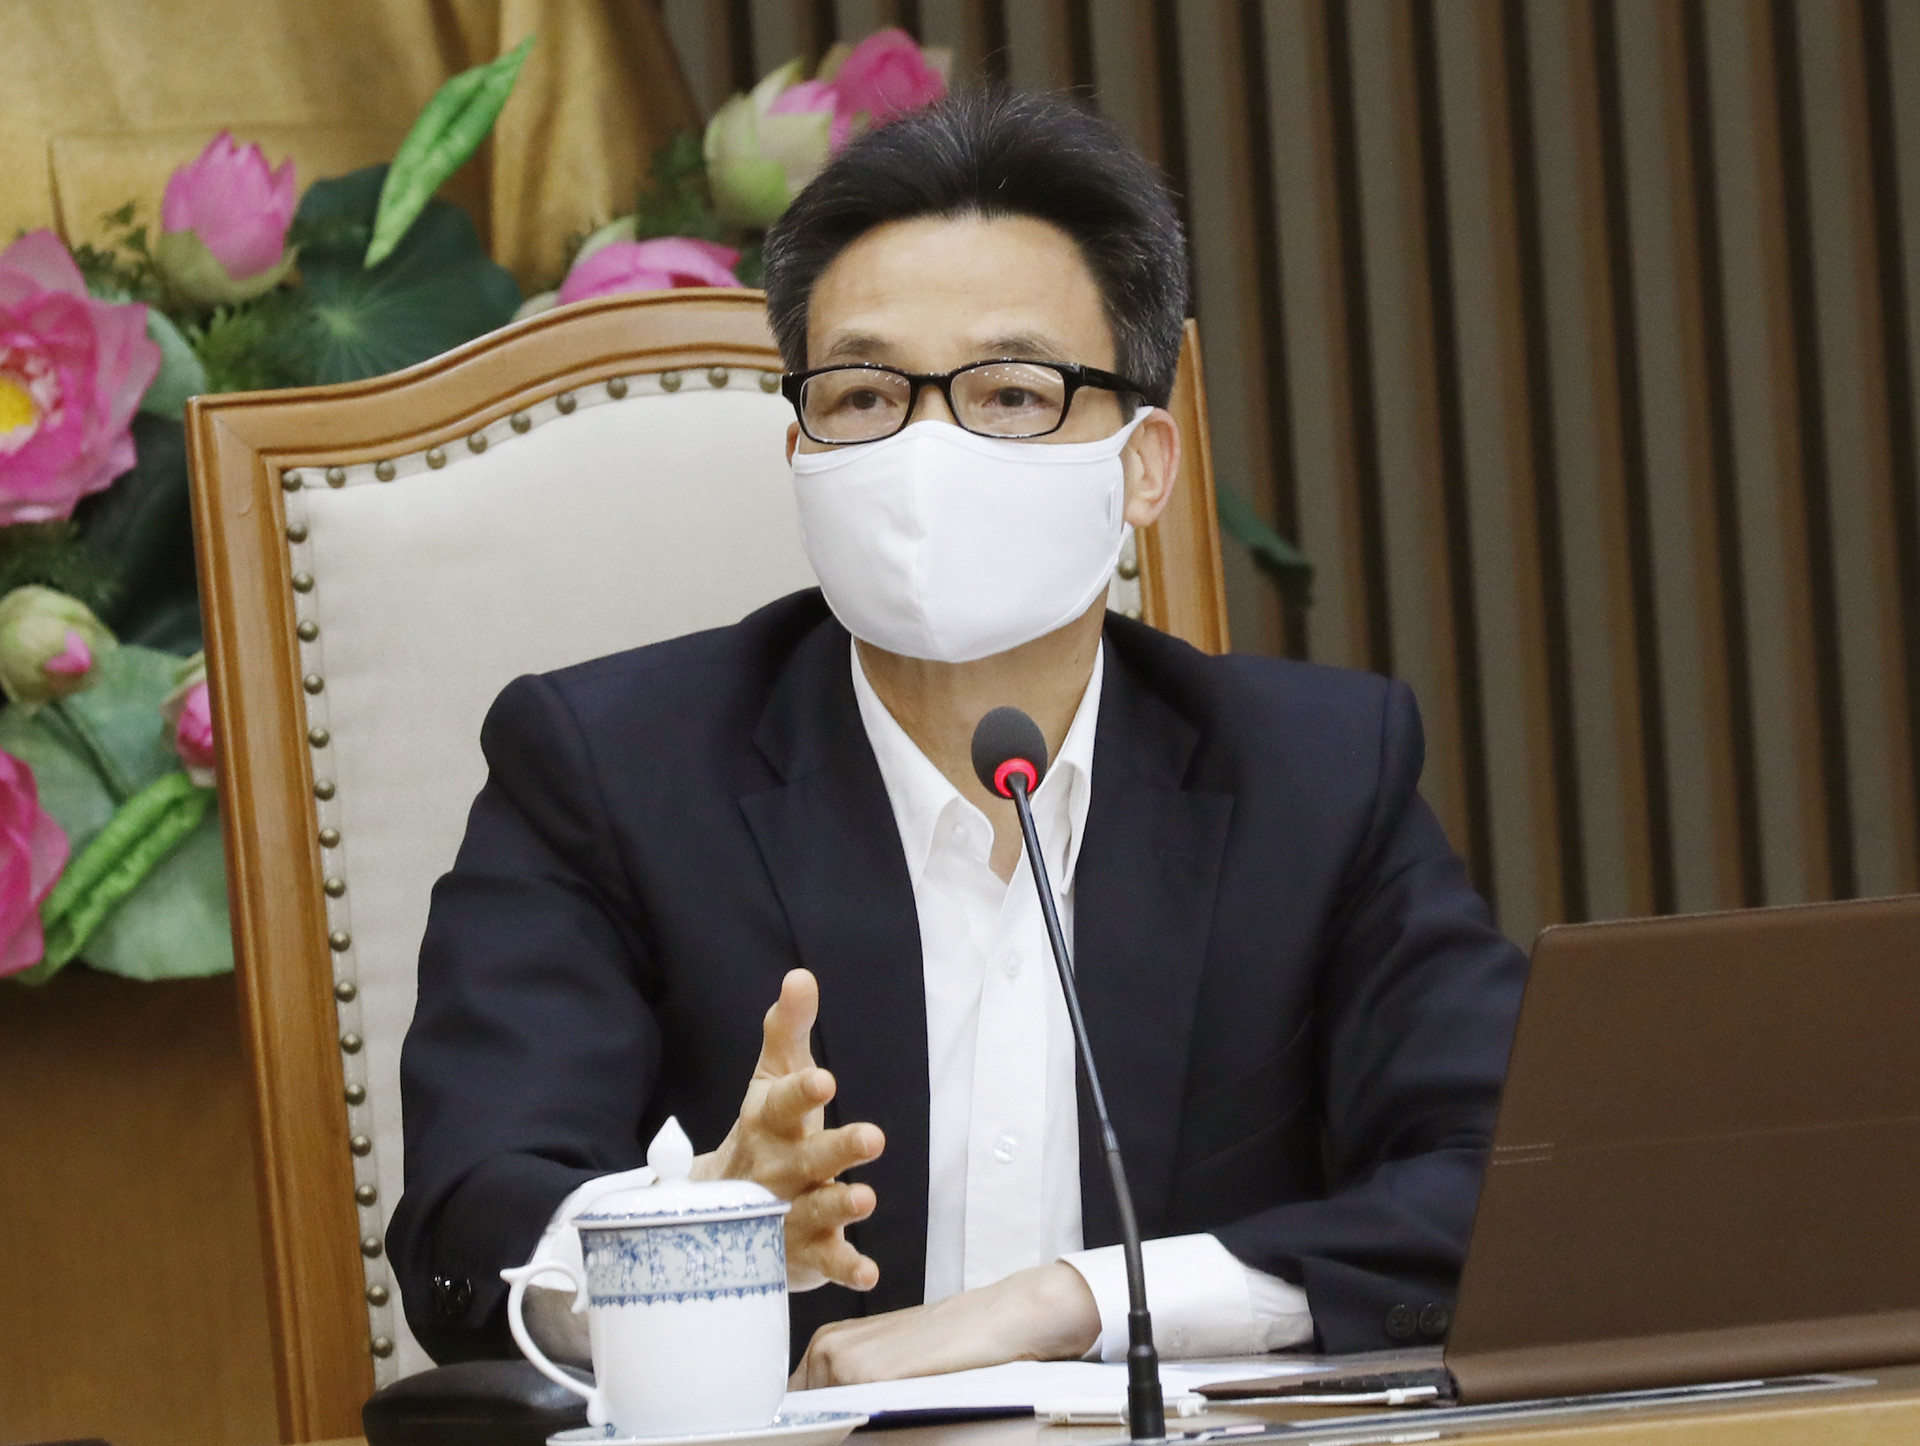 Phó Thủ tướng: 'Phải chiến thắng dịch bệnh bằng công thức của Việt Nam' - 1